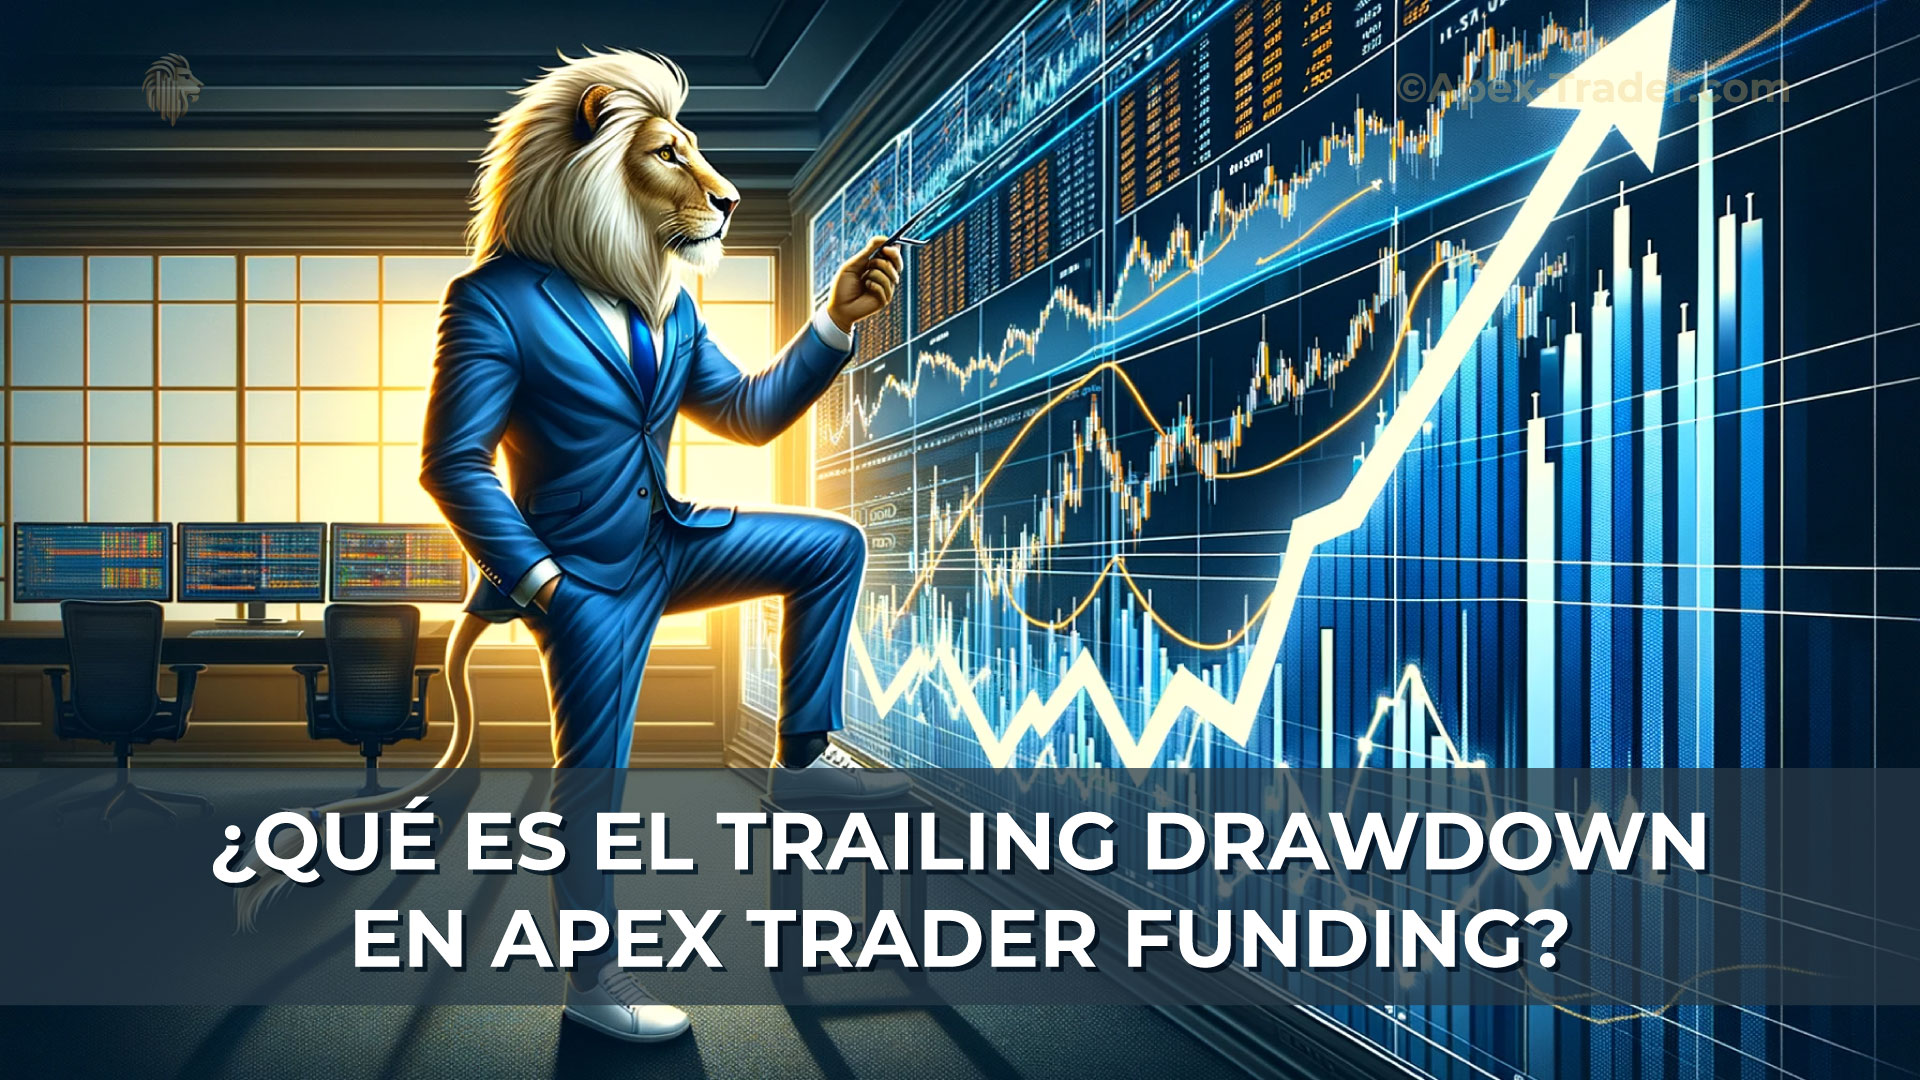 Qué-es-el-Trailing-Drawdown-en-Apex-Trader-Funding-On-Apex-Trader-Website